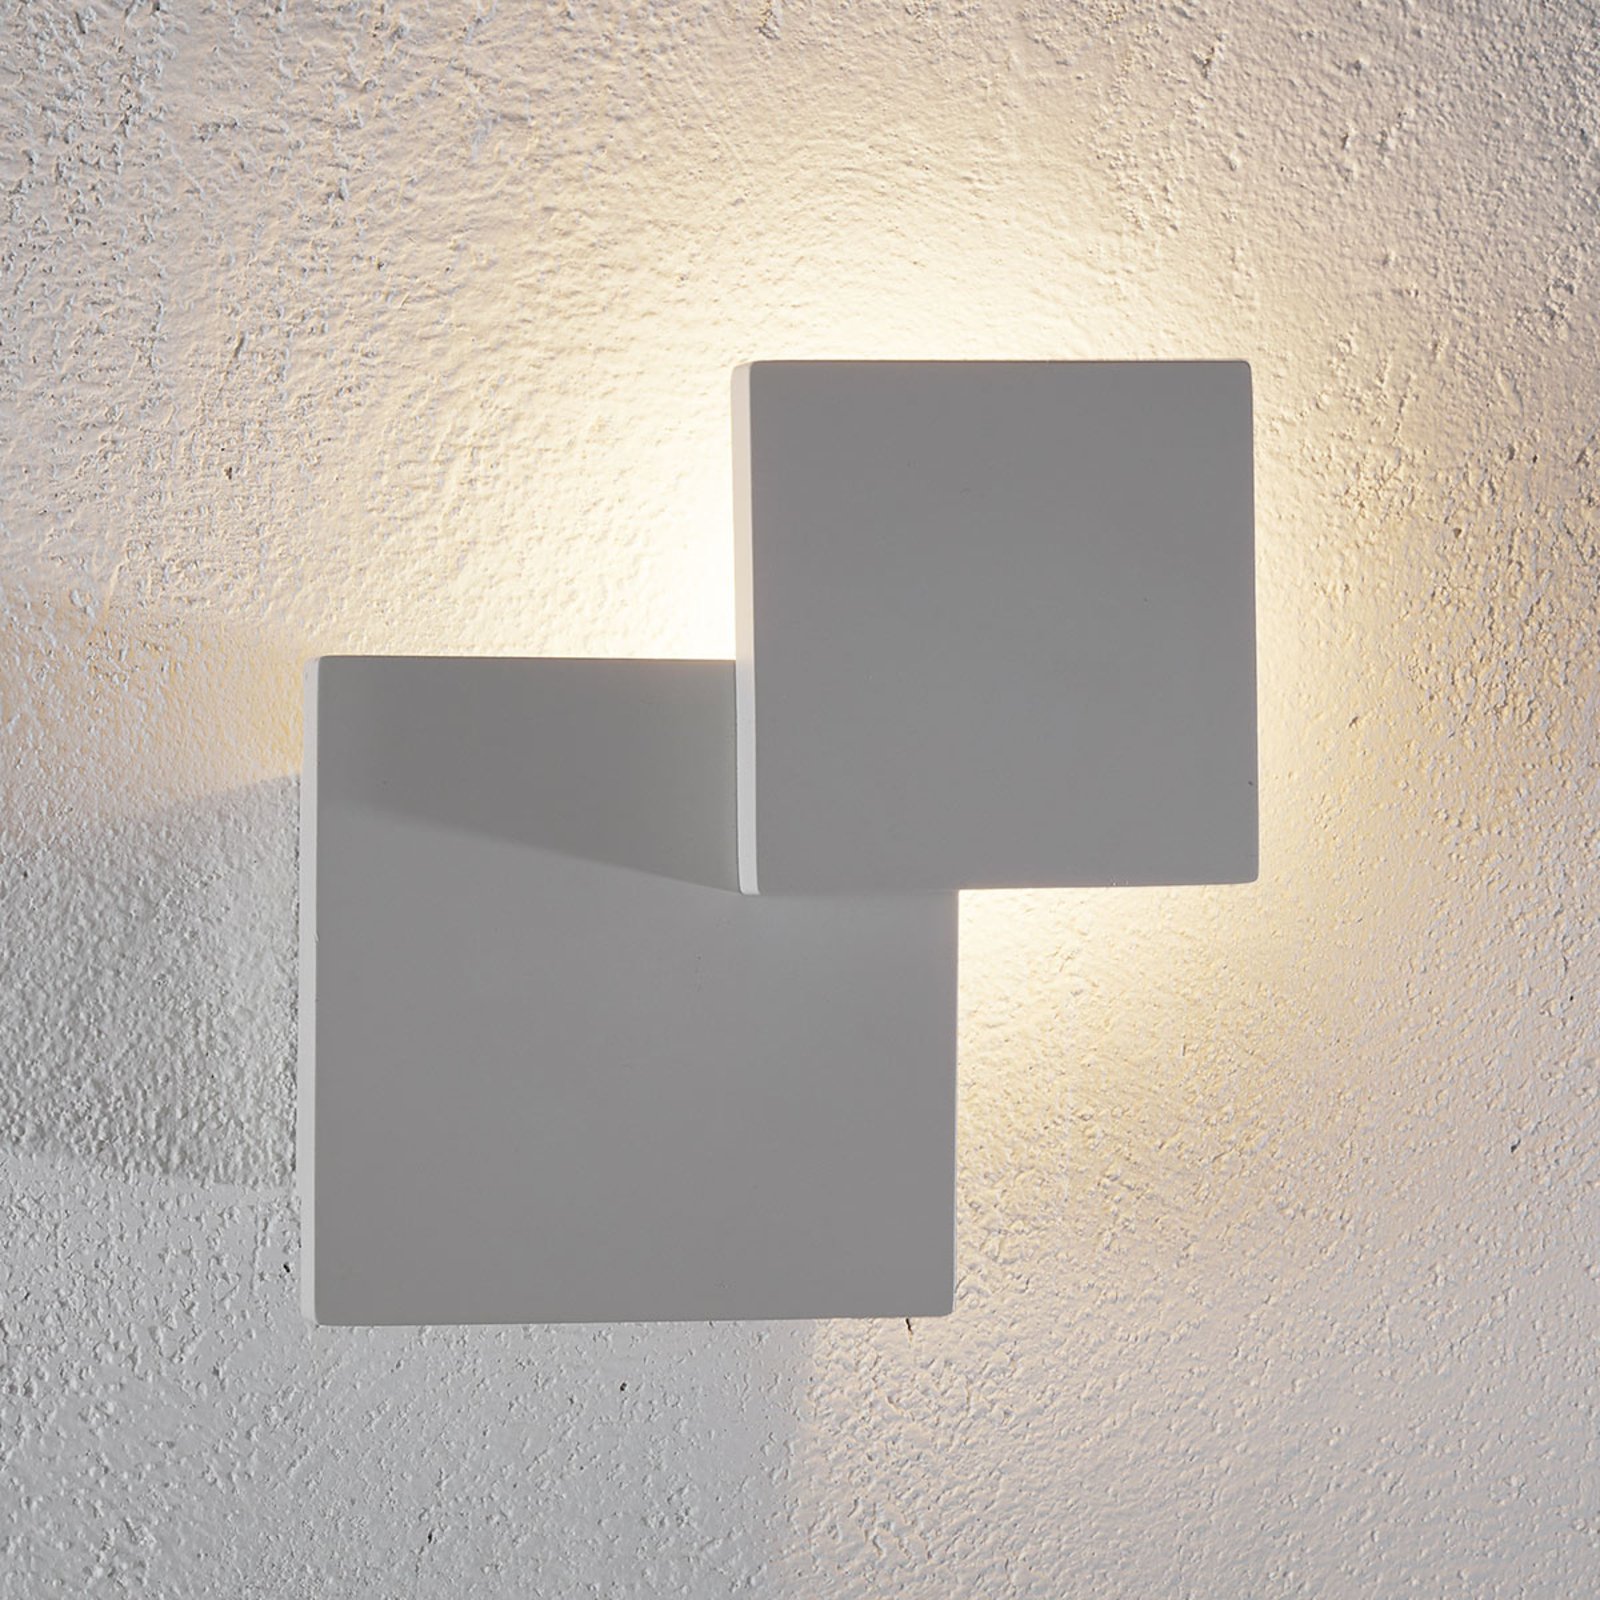 LED-vägglampa Tahiti - kvadratisk form